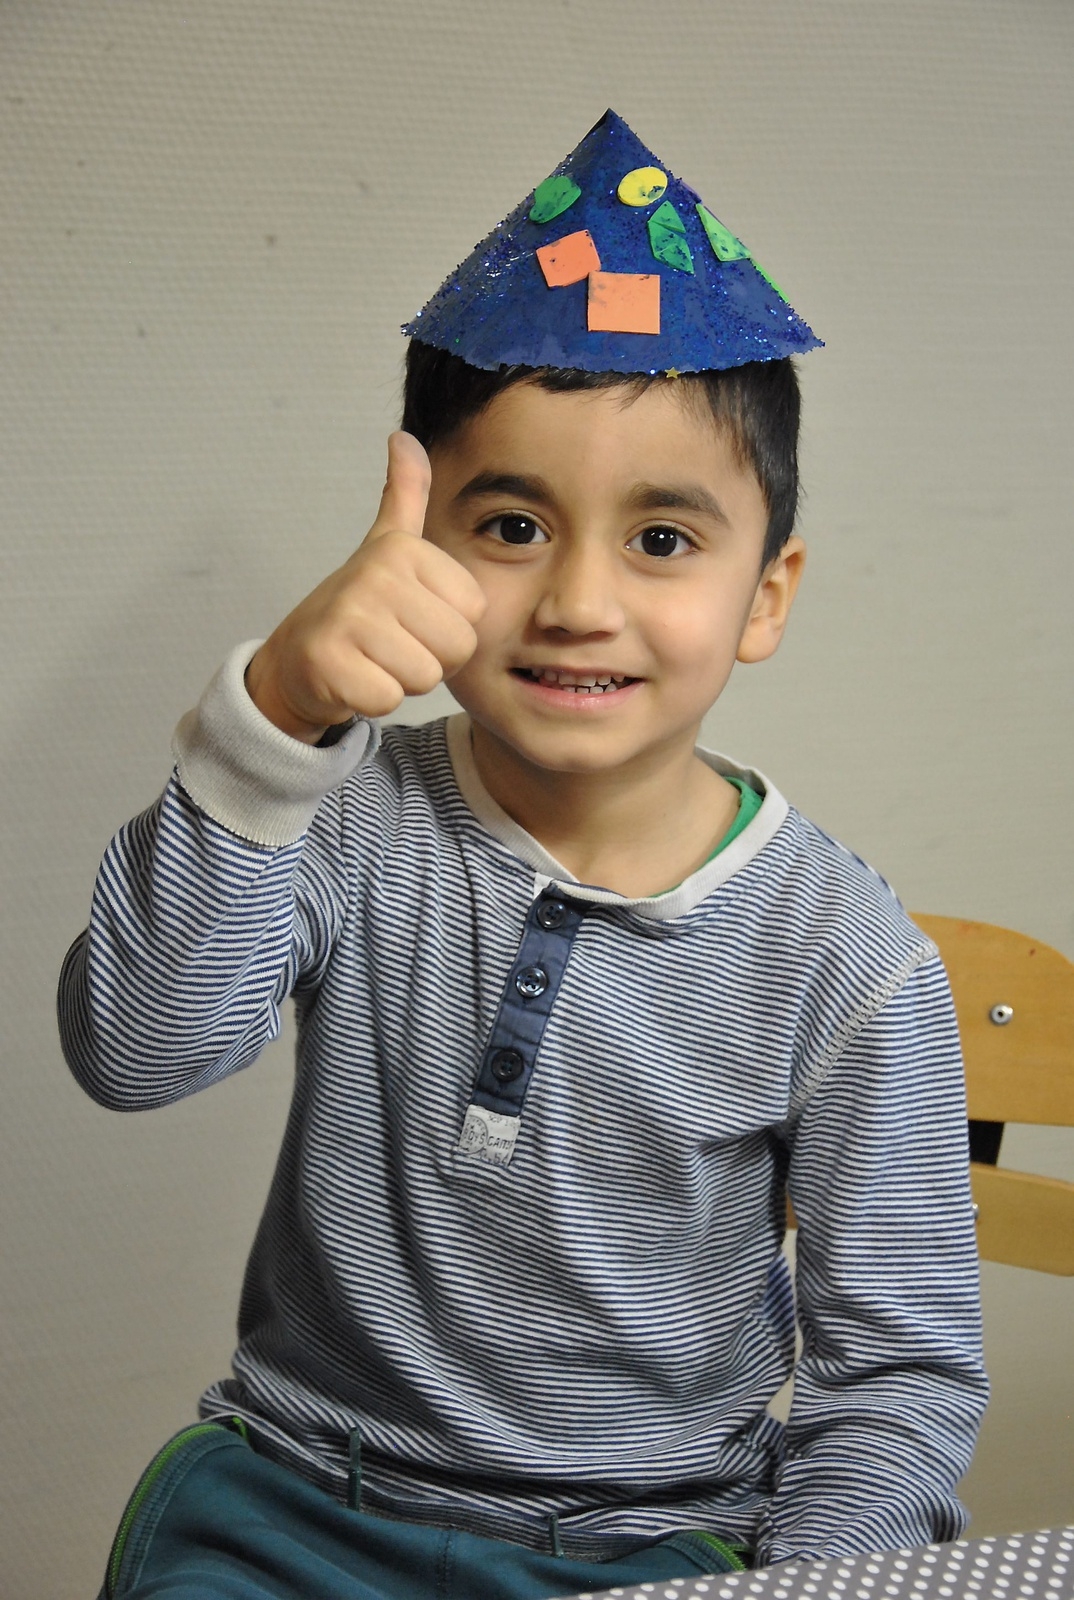 Tummen upp för Rayan Hammo, som ska jaga tjuvar när han blir stor. Hoppas han får användning av sin fina, blåa hatt då!
Foto: Marie Strömberg Andersson